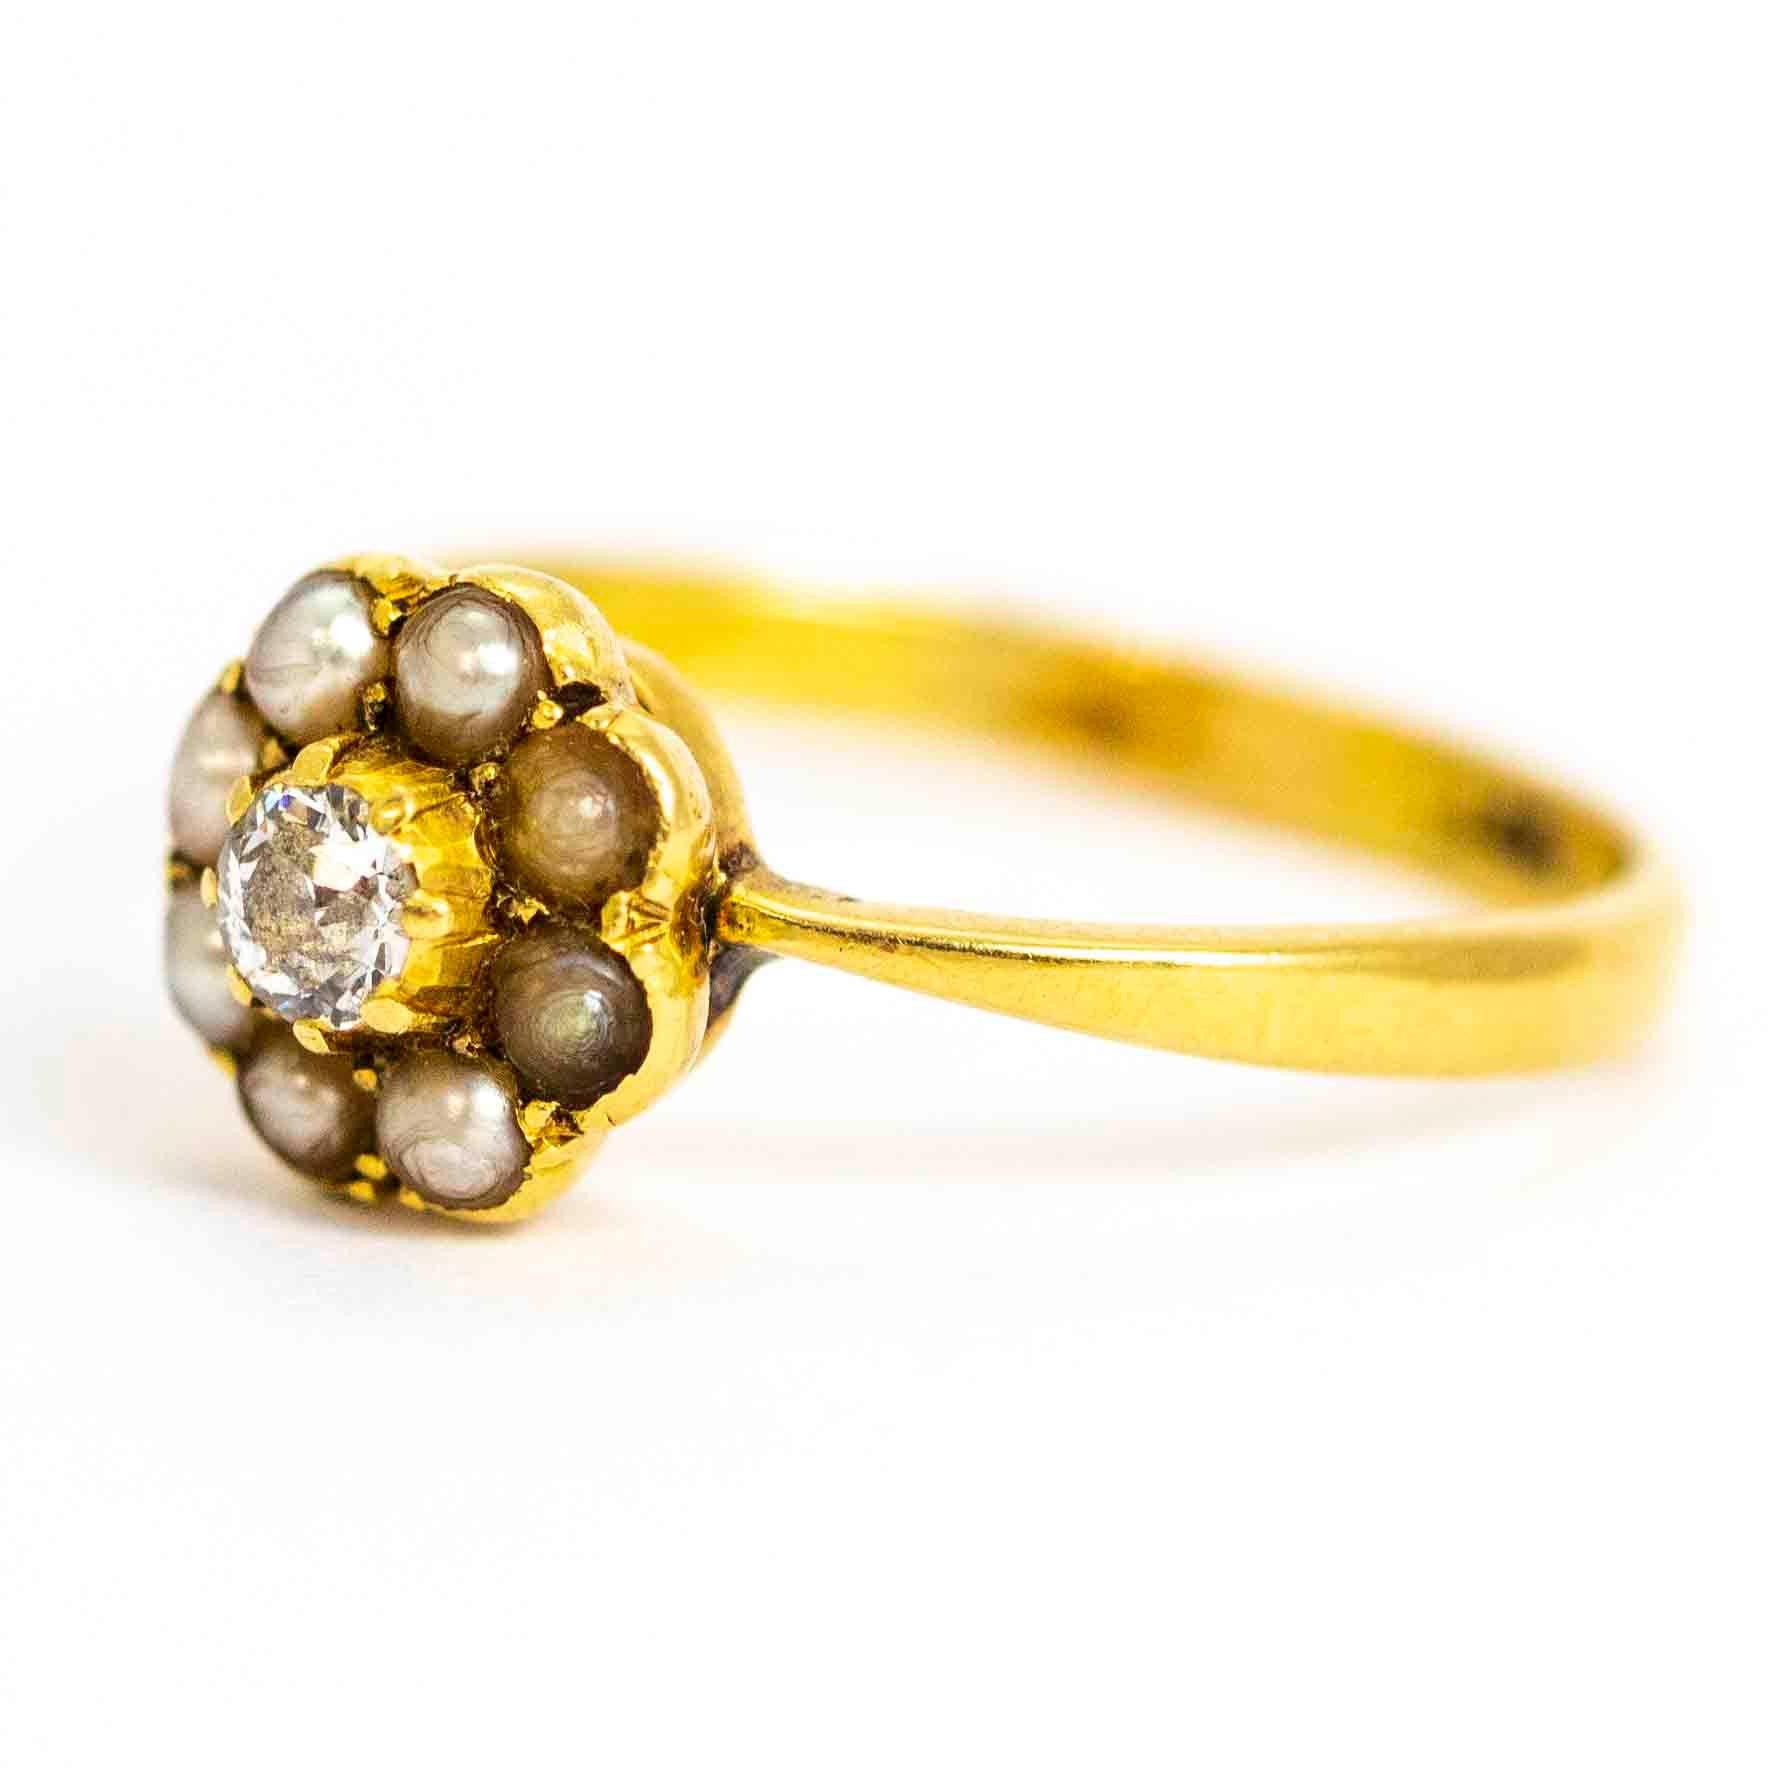 Ein wunderschöner Vintage-Cluster-Ring. In der Mitte befindet sich ein prächtiger Diamant im Kissenschliff mit 18 Punkten, umgeben von einem wunderschönen Perlenhalo. Gefertigt aus 18 Karat Gelbgold.

Ring Größe: UK L, US 6

Cluster Breite: 8.6mm